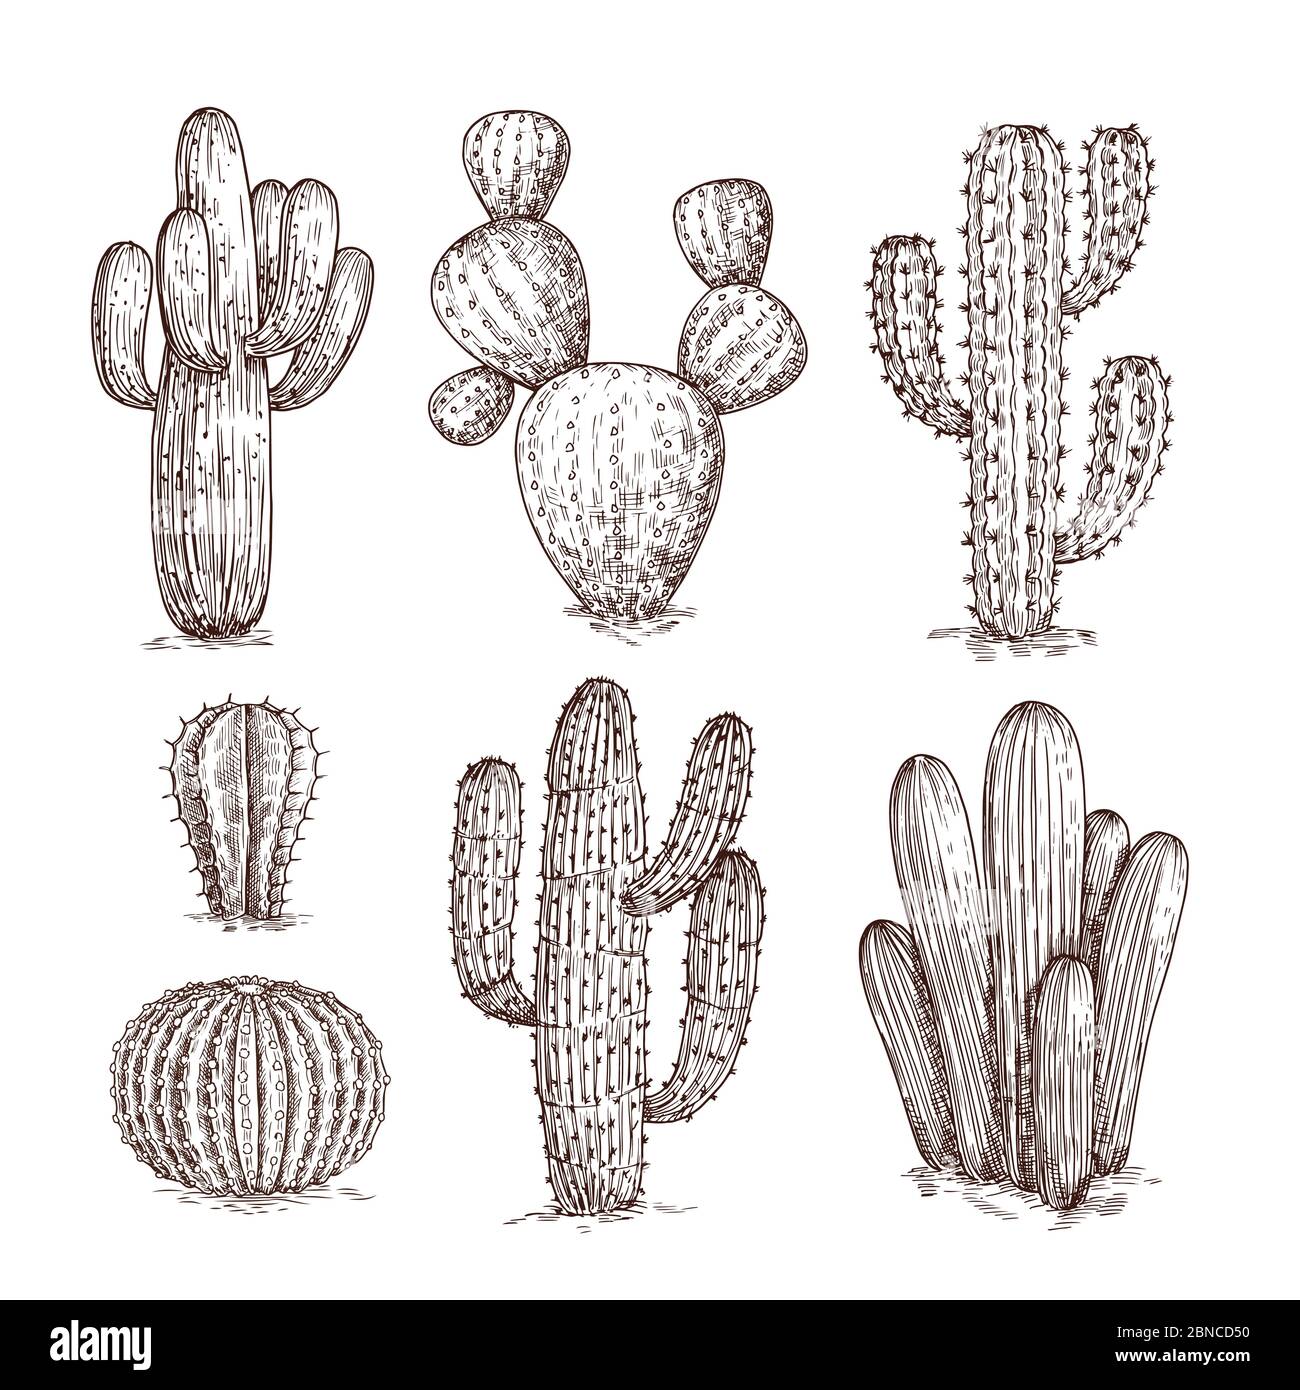 Handgezeichneter Kaktus. Westliche Wüste Kakteen mexikanische Pflanzen im Skizzenstil. Cactuses Doodle Vektor-Set. Illustration von wilden Kaktus mit Dorn Stock Vektor